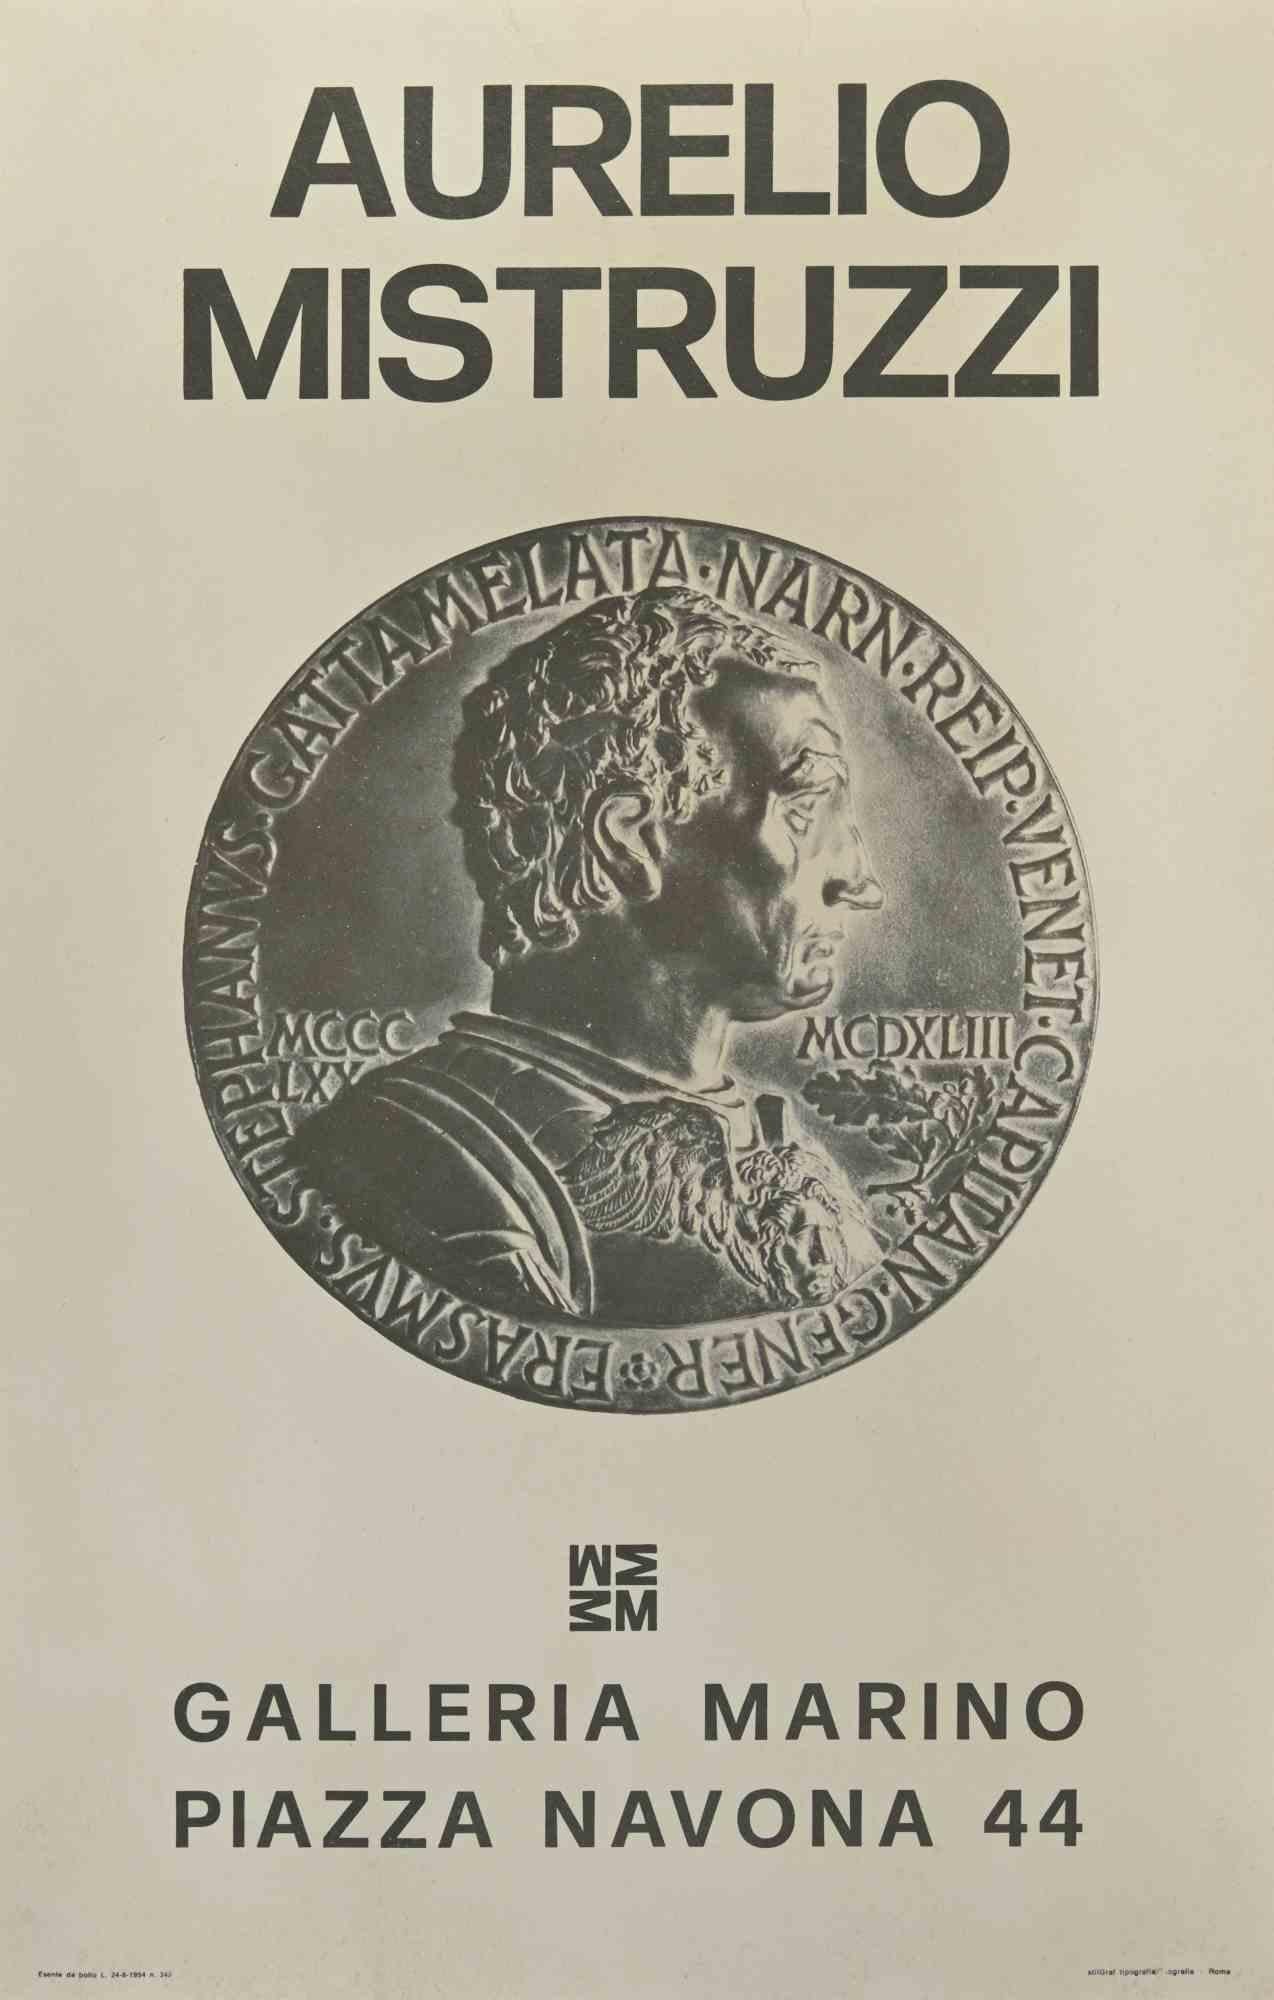 Aurelio Mistruzzi – Ausstellungsplakat – Offsetdruck – 20. Jahrhundert